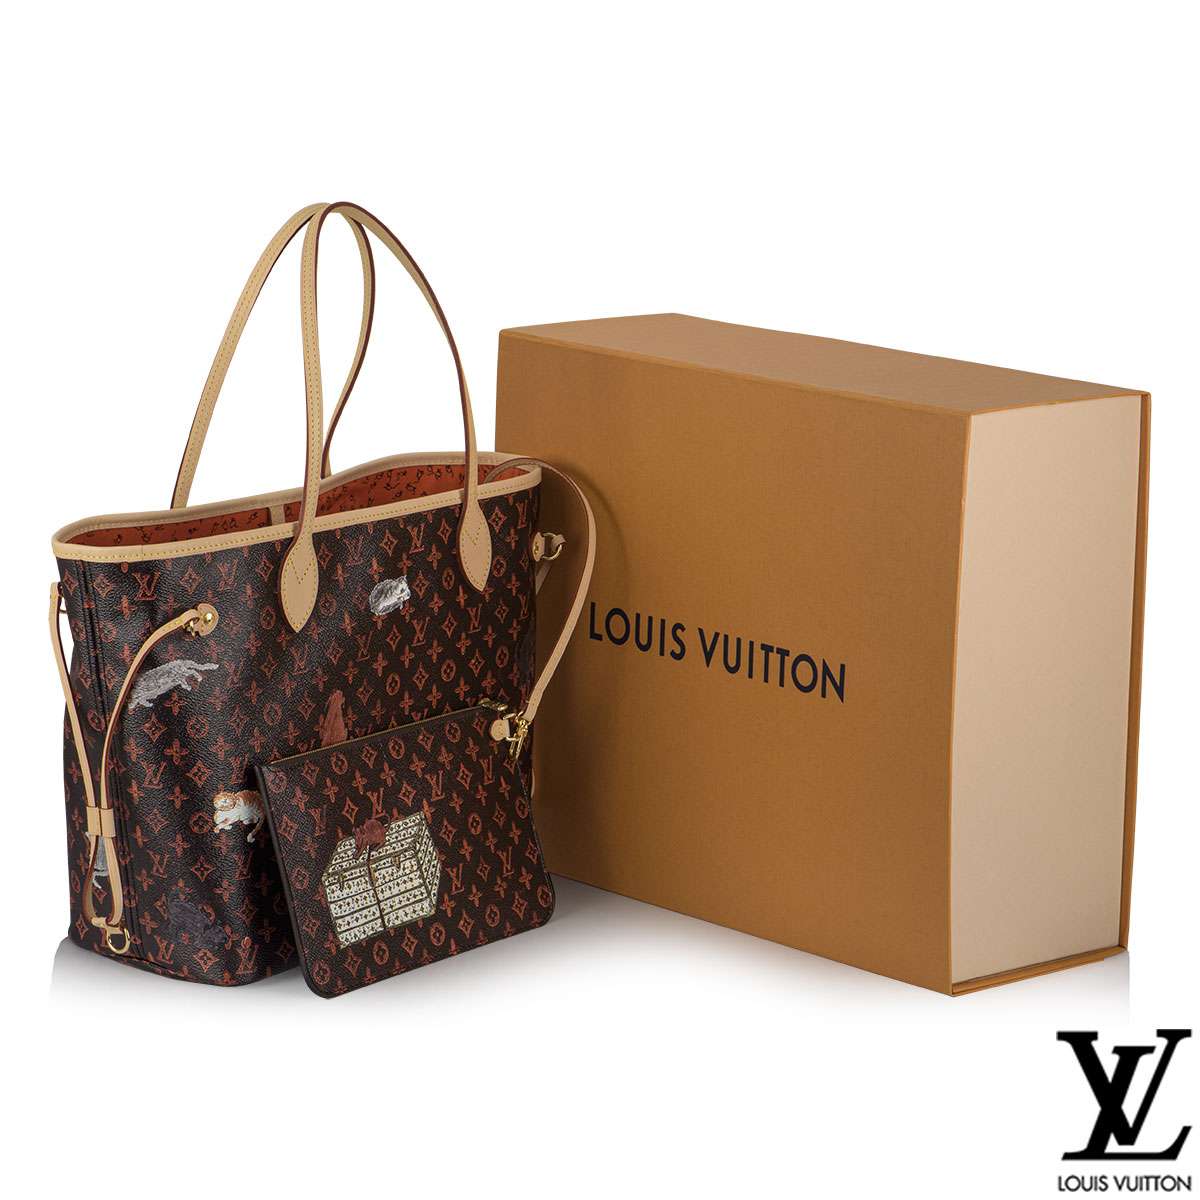 Louis Vuitton X Grace Coddington Catogram Neverfull MM ...